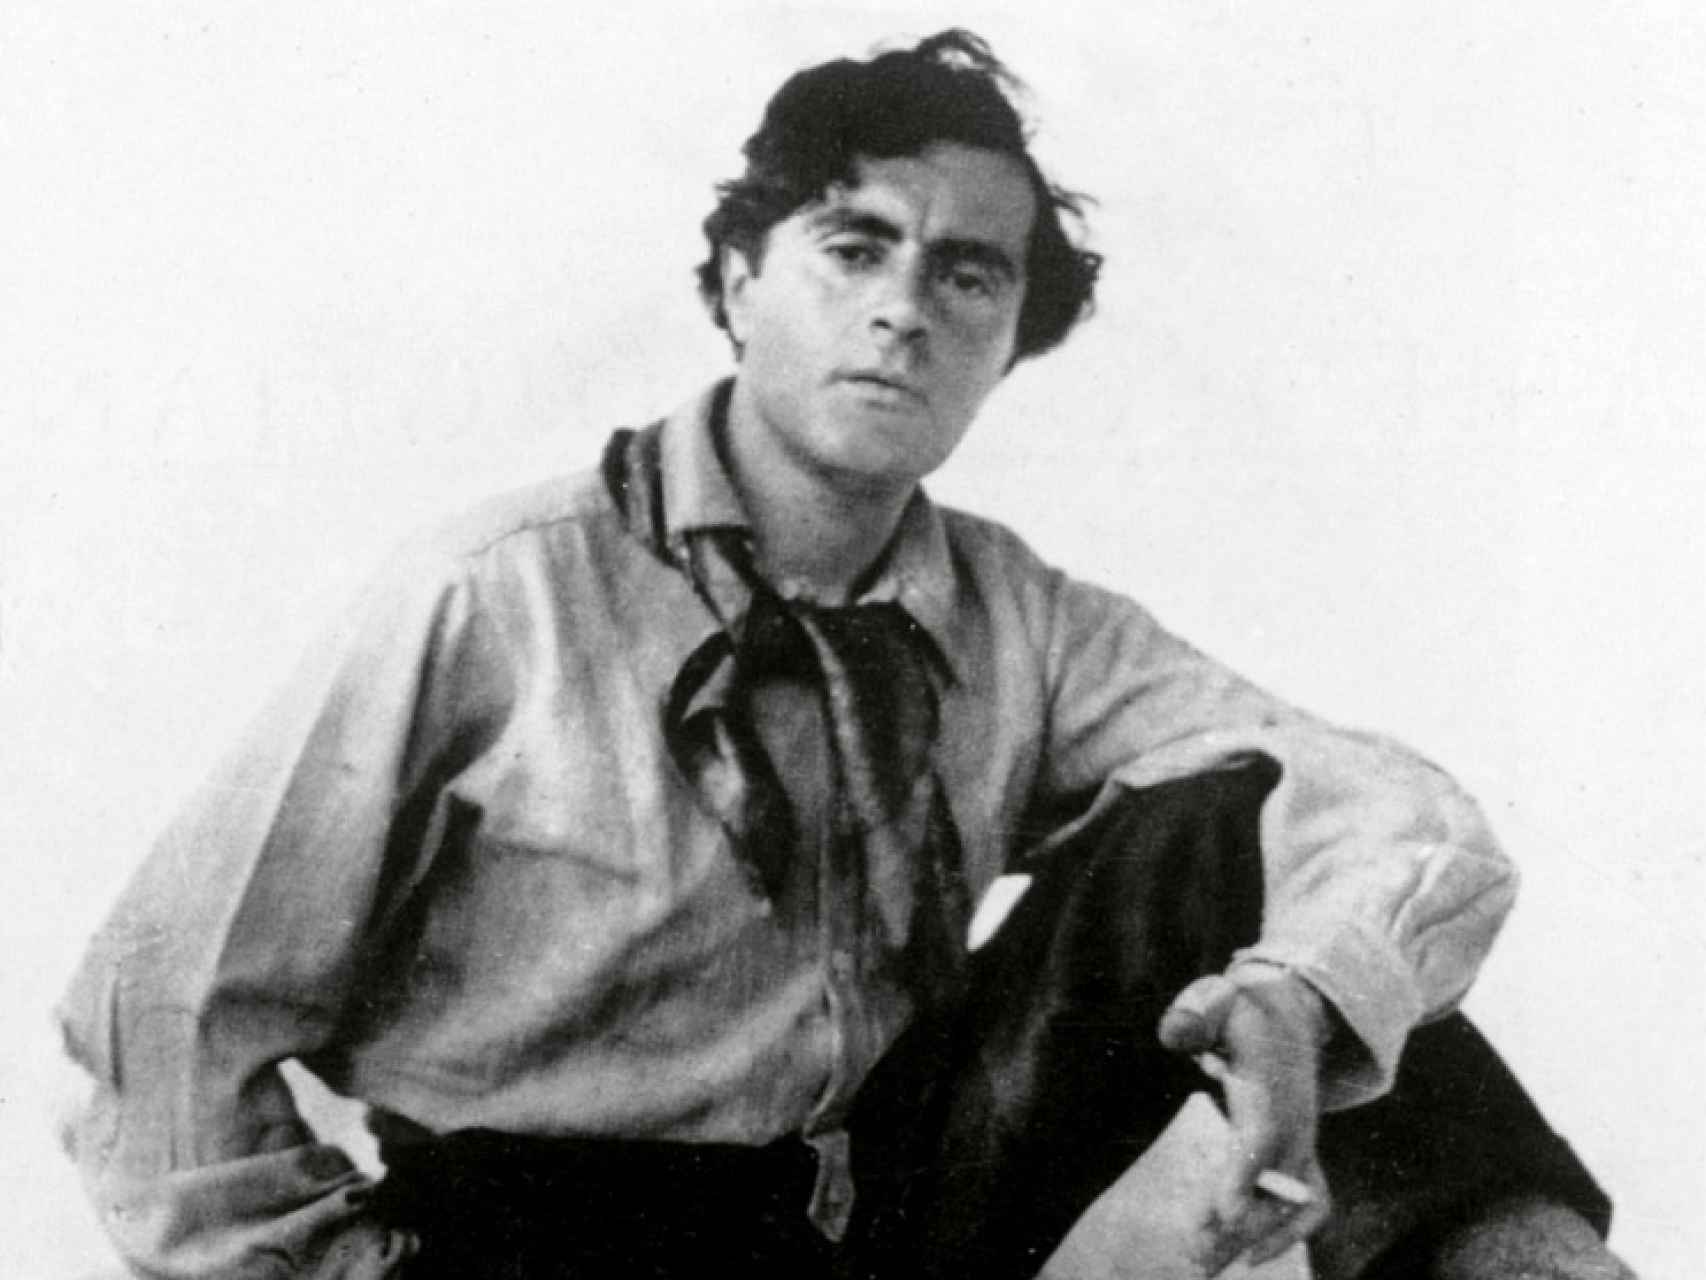 Un retrato del fotógrafo Marc Vaux del artista italiano Amedeo Modigliani.